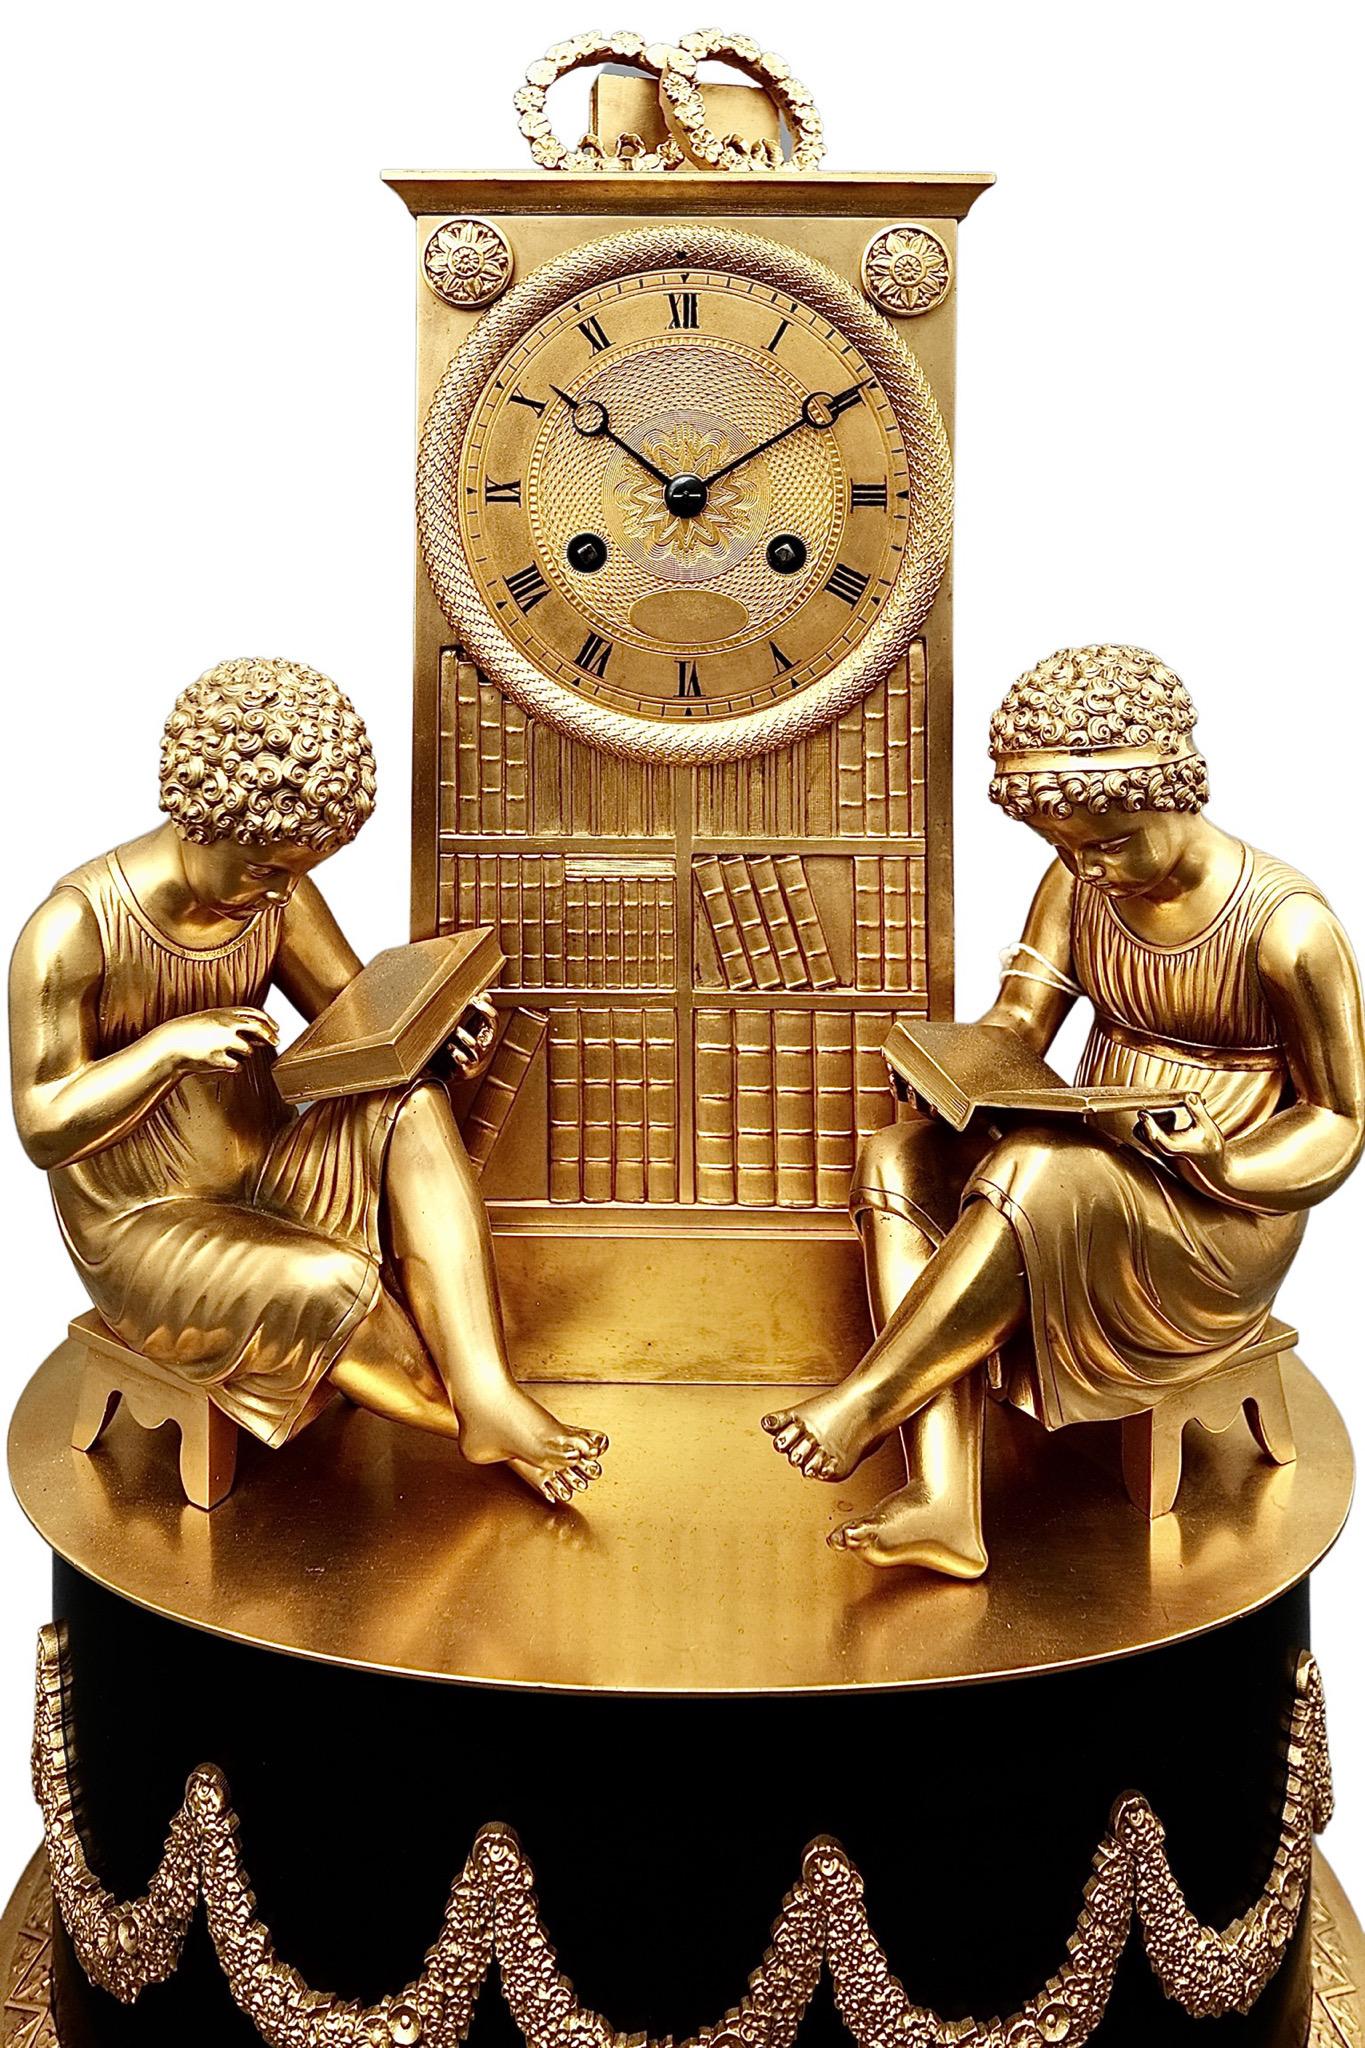 Eine faszinierende antike Französisch Empire Striking Ormolu Kaminsimsuhr

Eine faszinierende Uhr in Form eines Bibliotheksregals, an dessen Seiten zwei Kinder sitzen. Das römische Zifferblatt steht auf einem Sockel mit Ormolu-Füßen und ist mit